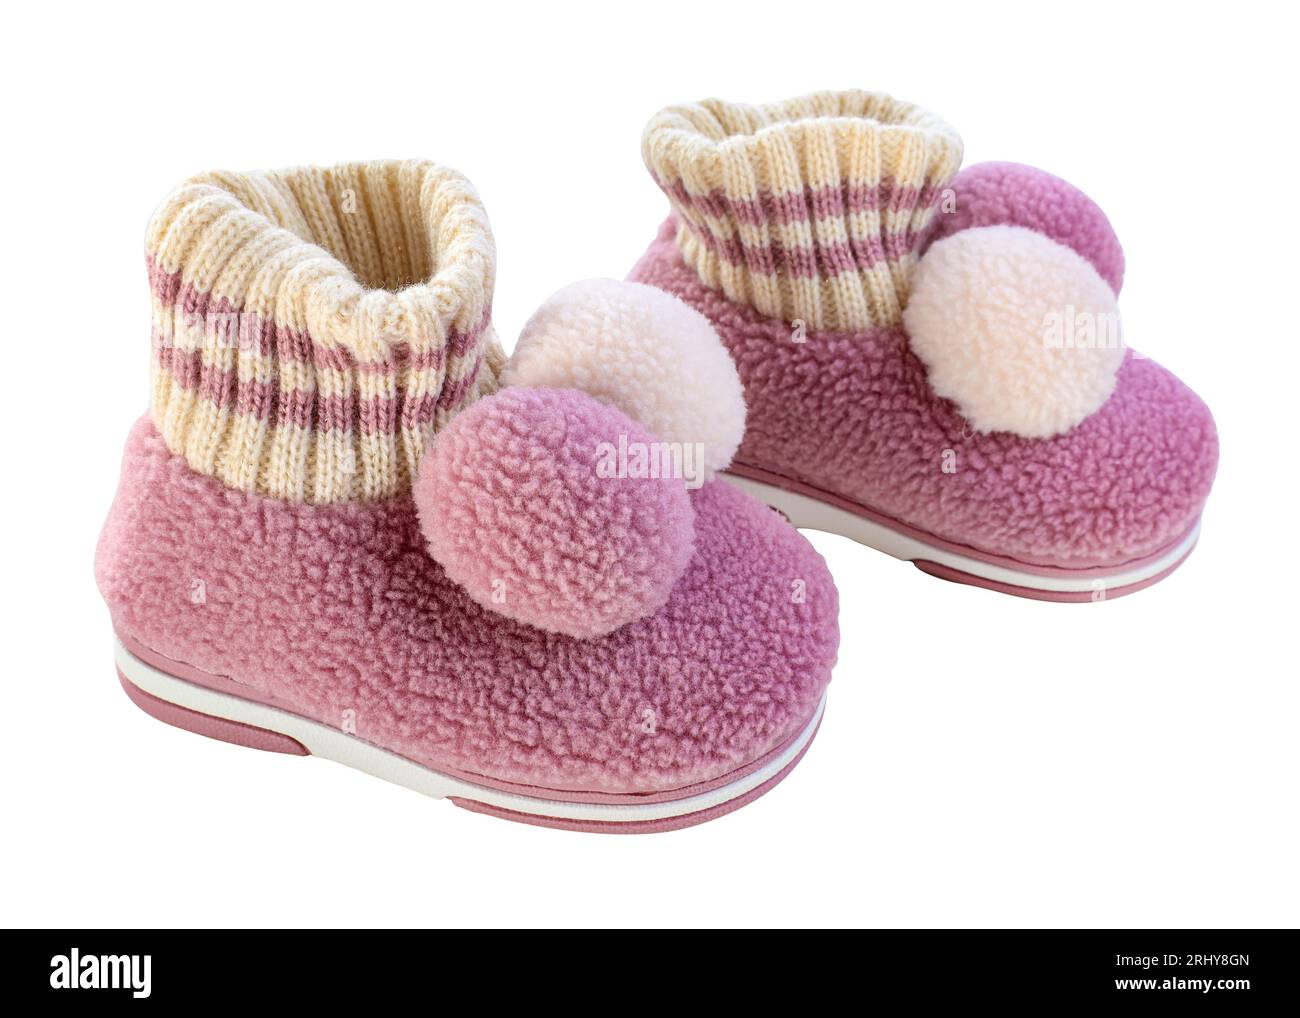 Pantoufles pour enfants maison en laine avec balabon isolé. Pantoufles chaudes roses pour les filles. Une paire de chaussures d'enfant pour le temps froid sur fond blanc. Banque D'Images